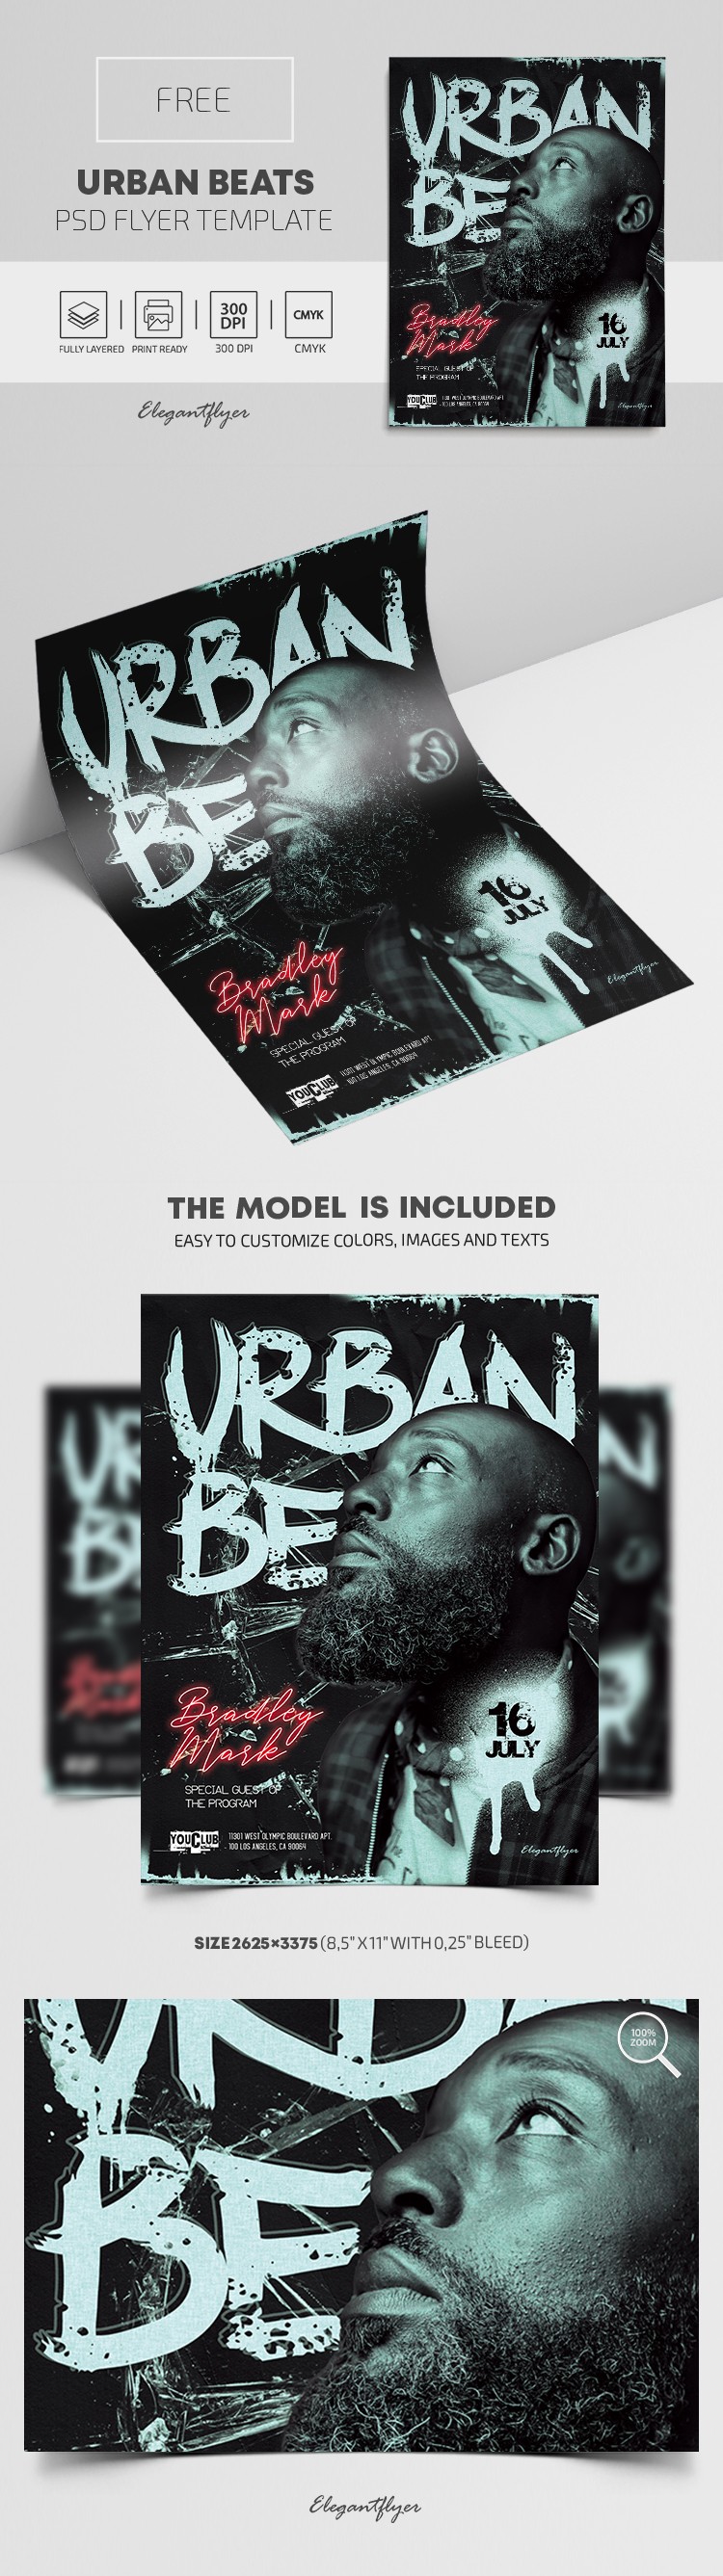 Urban Beats Flyer by ElegantFlyer